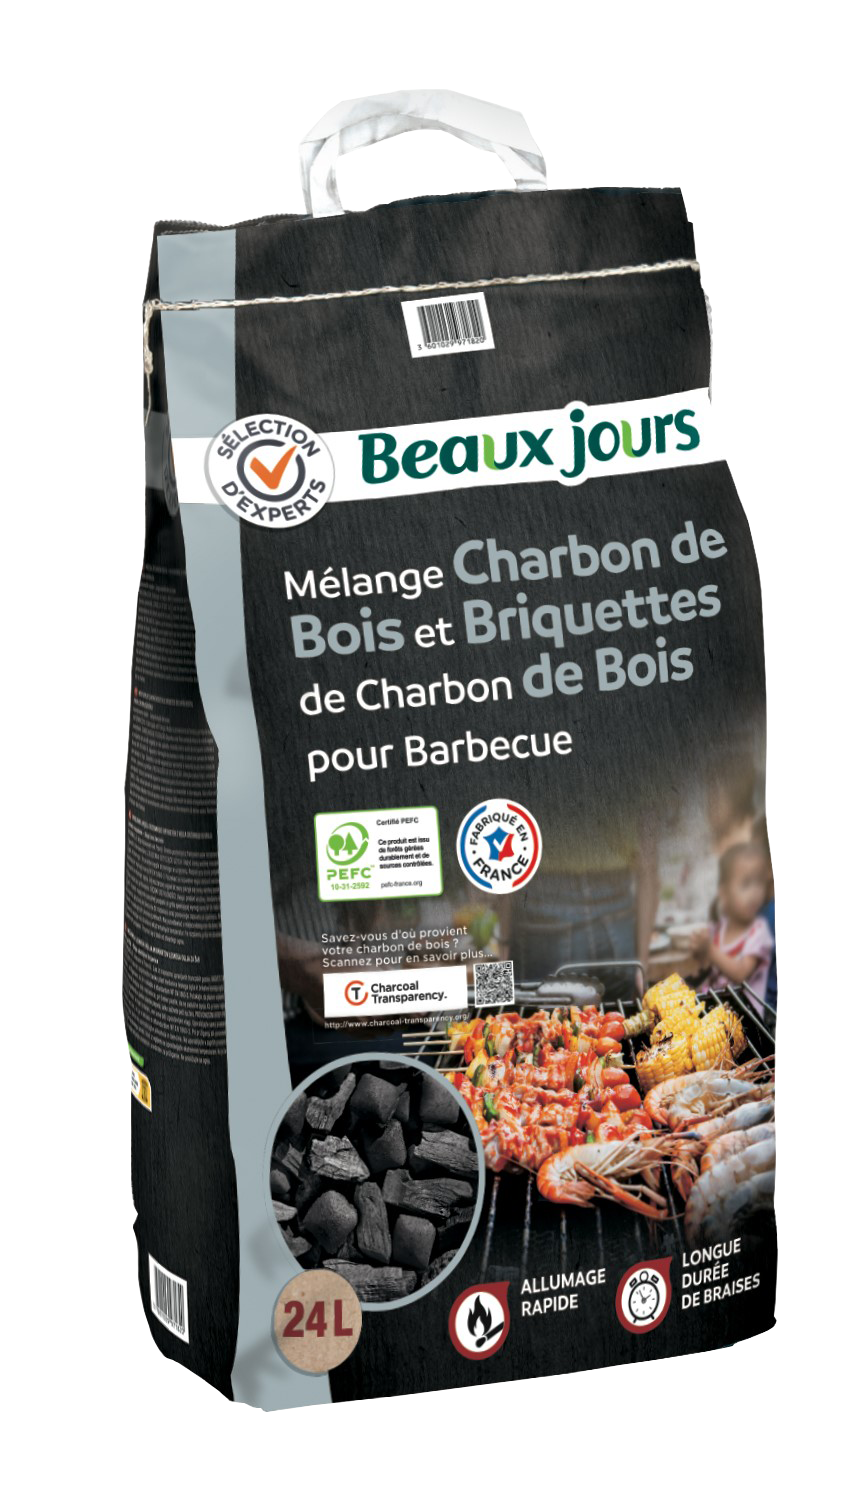 Beaux Jours - Mix charbon de bois et briquettes (24 L)